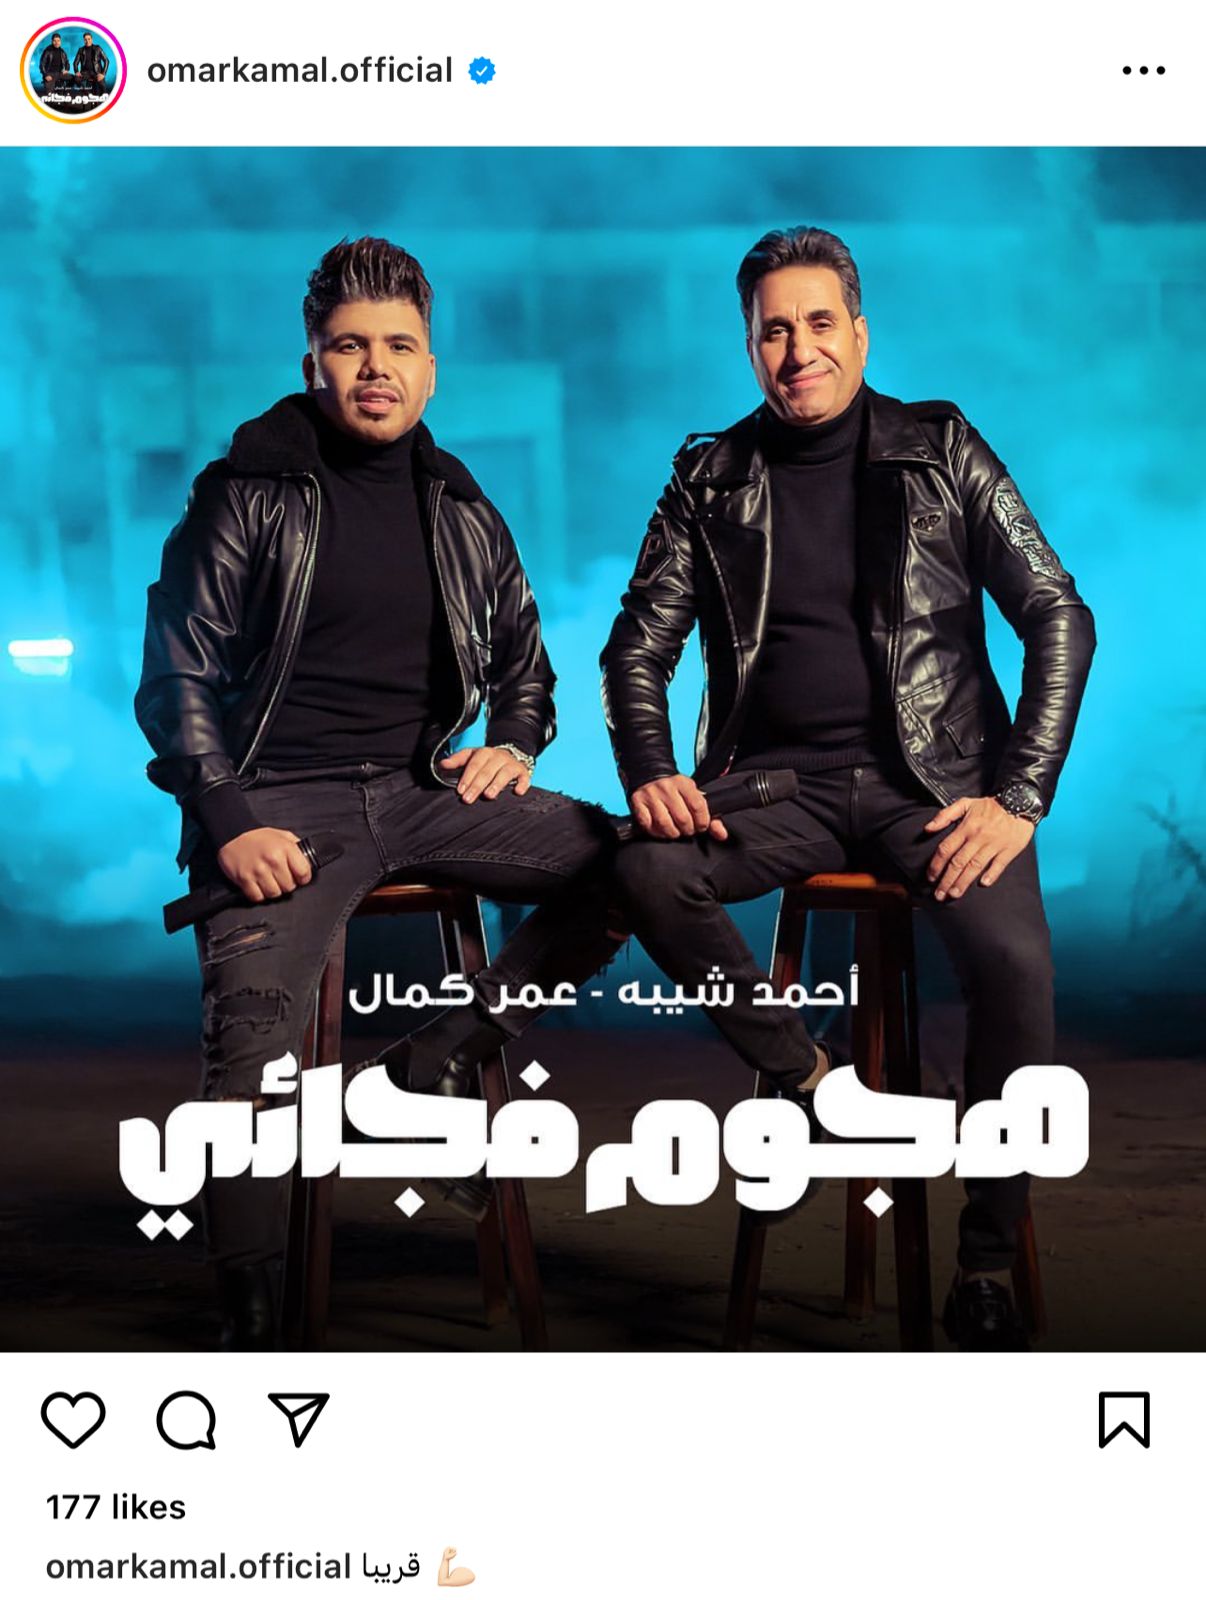 عمر كمال يطرح بوستر أغنيته مع أحمد شيبة «هجوم فجائي» 2